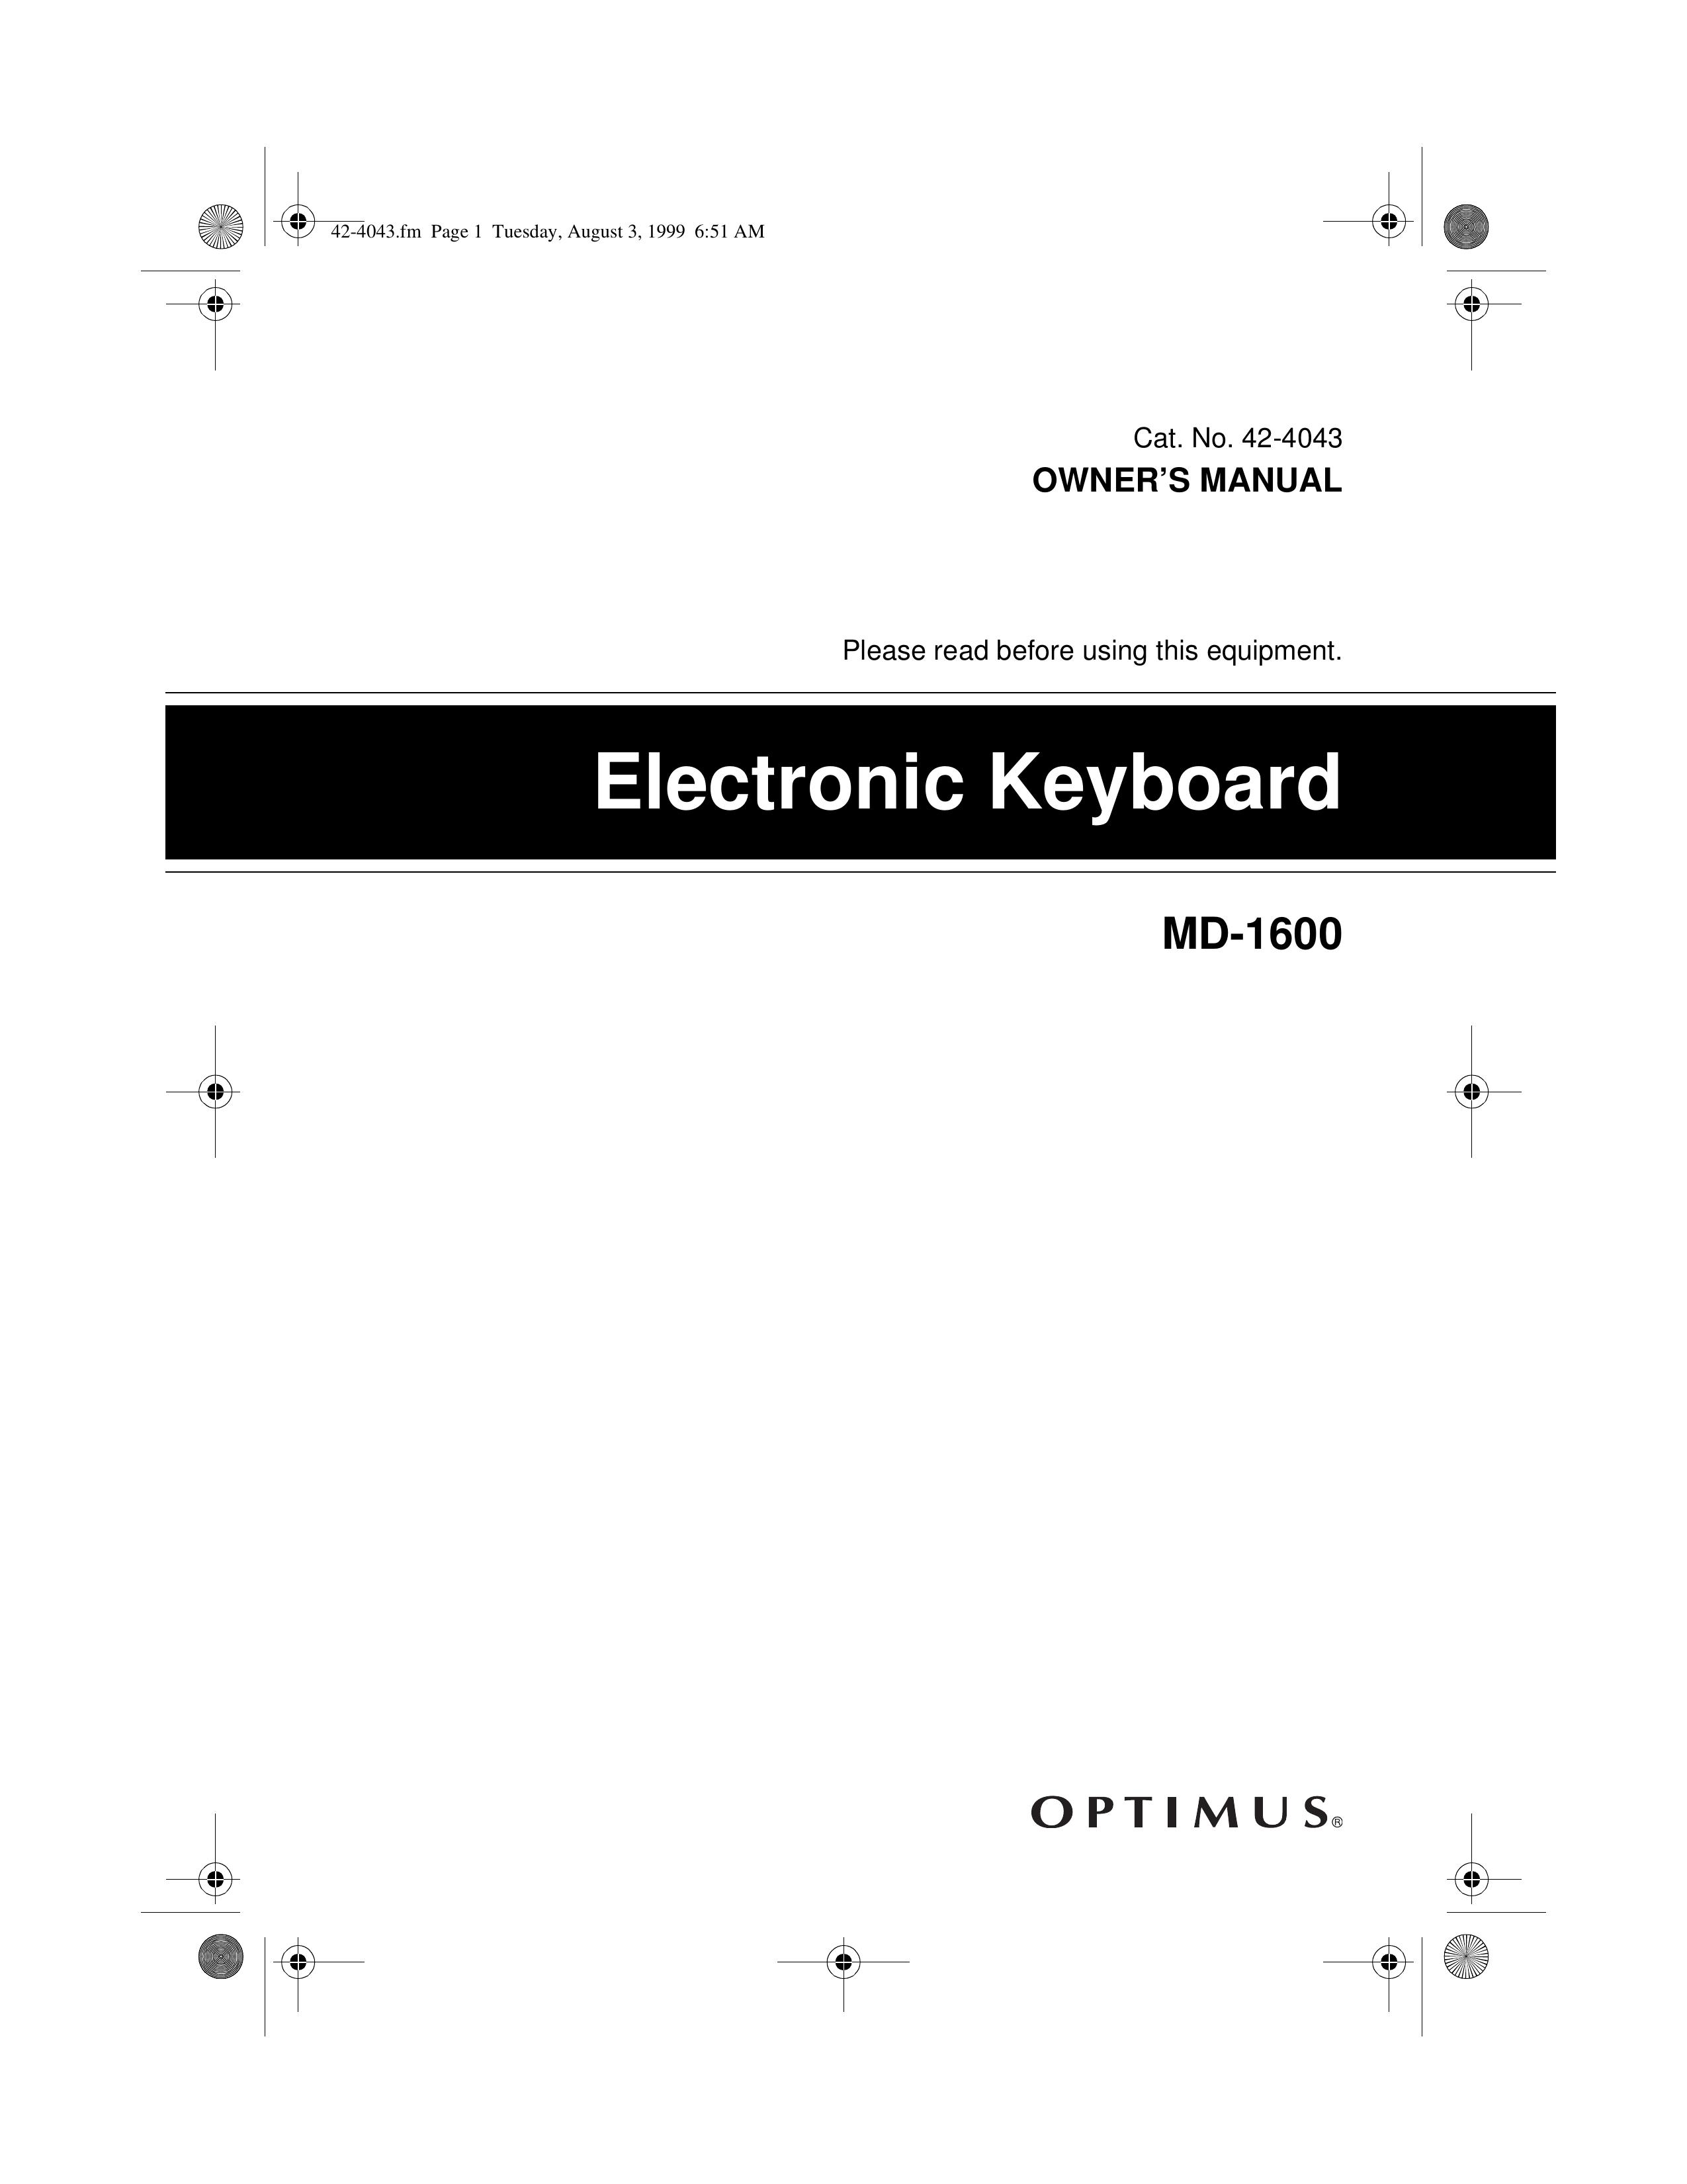 Optimus MD-1600 Electronic Keyboard User Manual